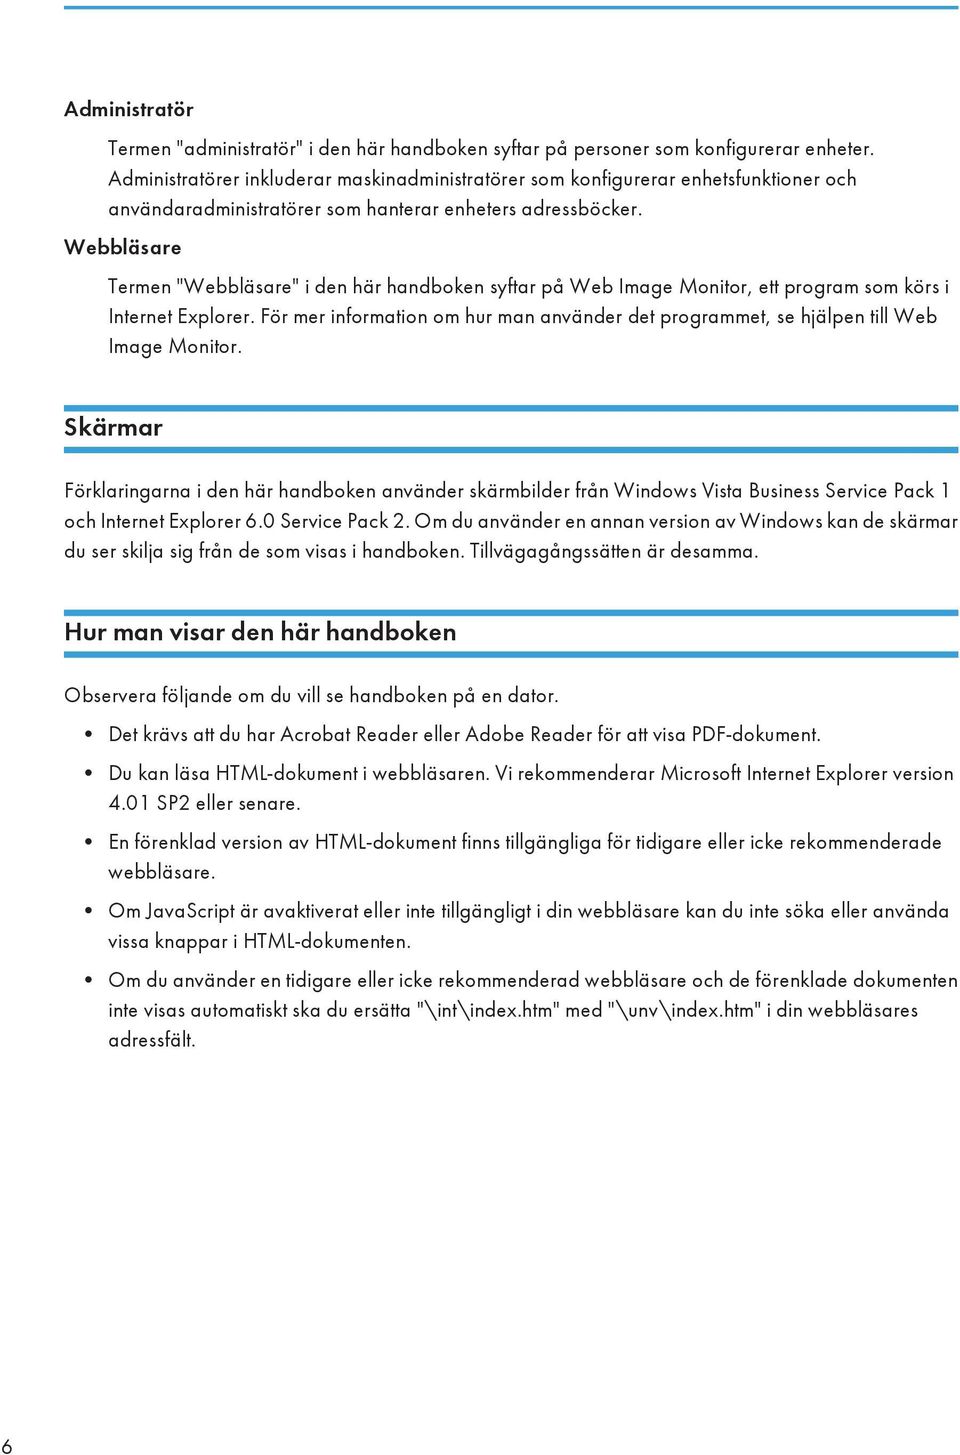 Webbläsare Termen "Webbläsare" i den här handboken syftar på Web Image Monitor, ett program som körs i Internet Explorer.